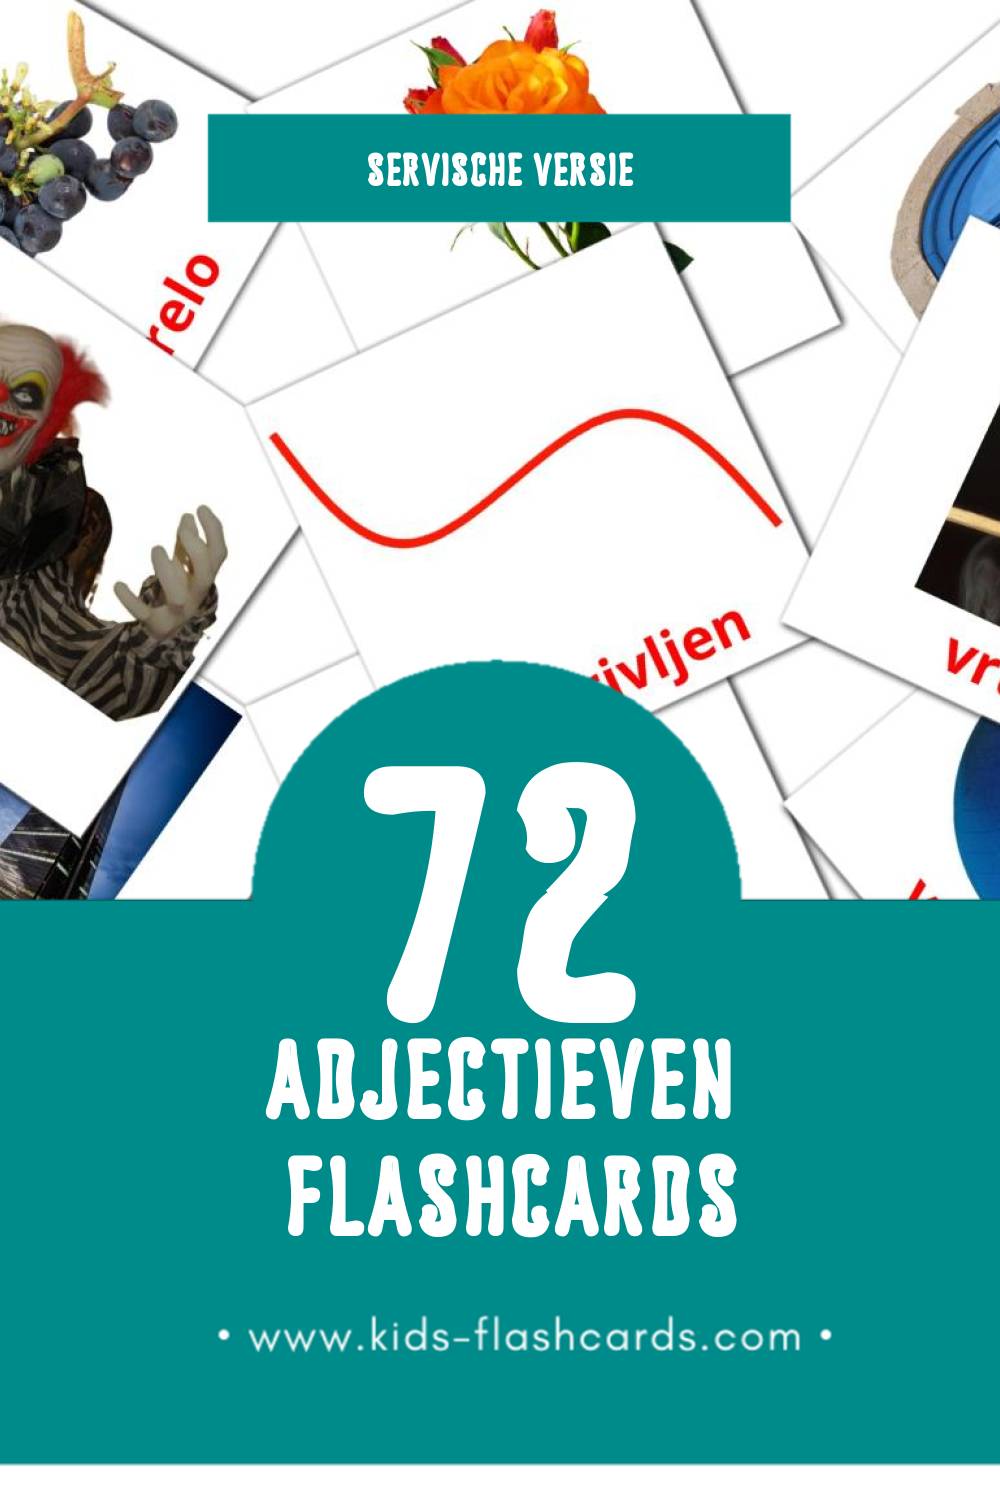 Visuele Pridevi Flashcards voor Kleuters (72 kaarten in het Servisch)